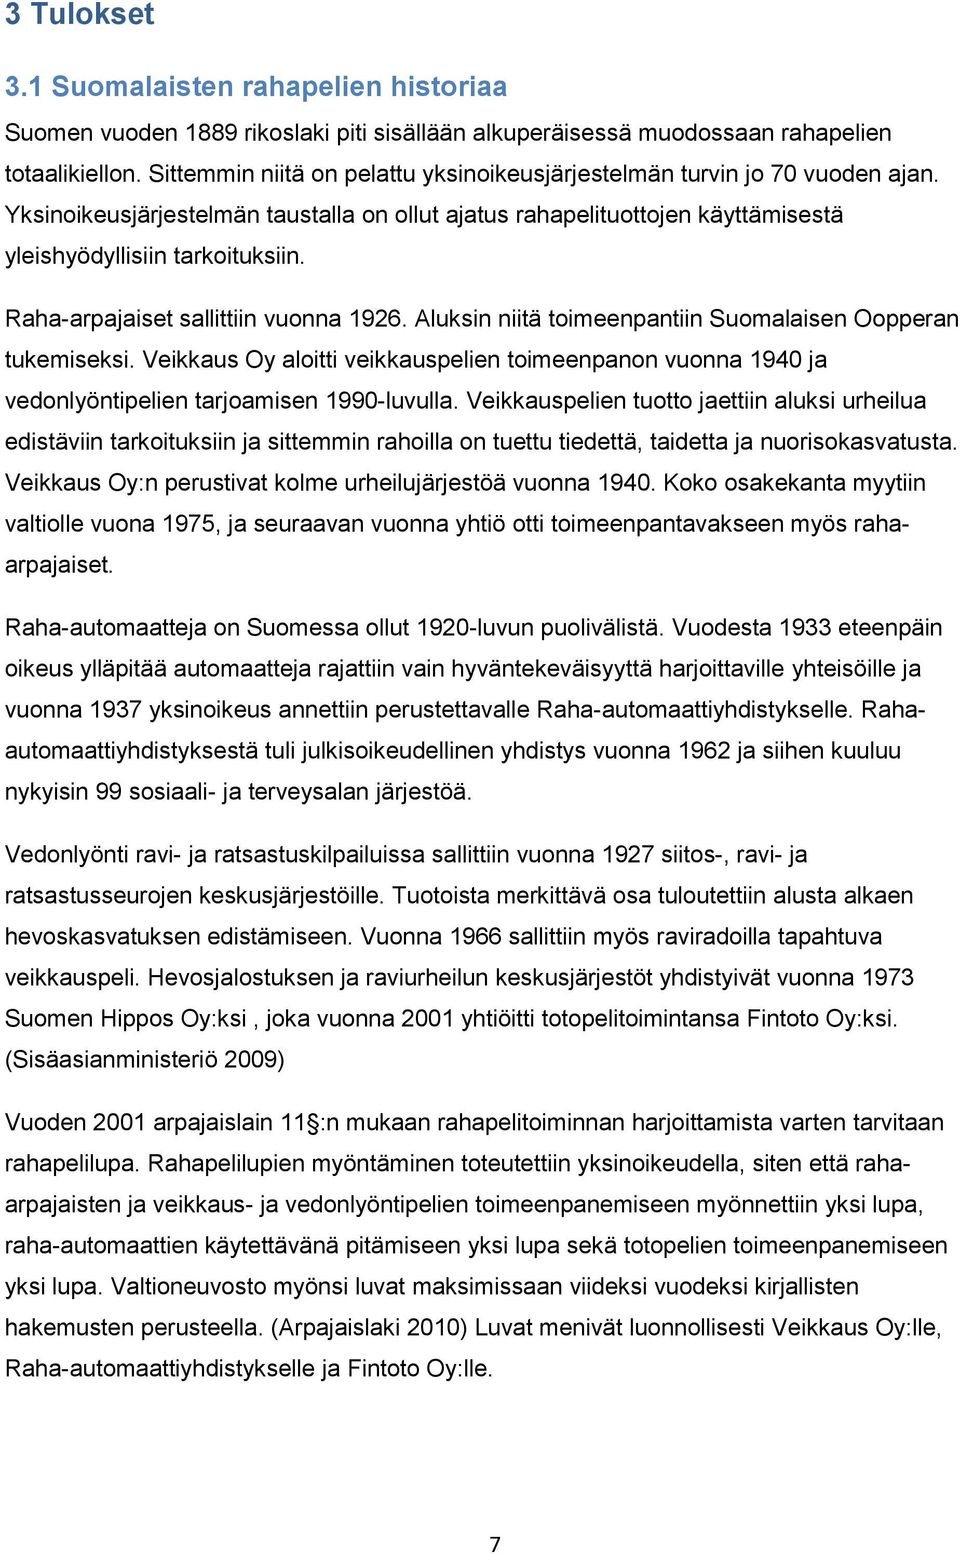 Raha-arpajaiset sallittiin vuonna 1926. Aluksin niitä toimeenpantiin Suomalaisen Oopperan tukemiseksi.